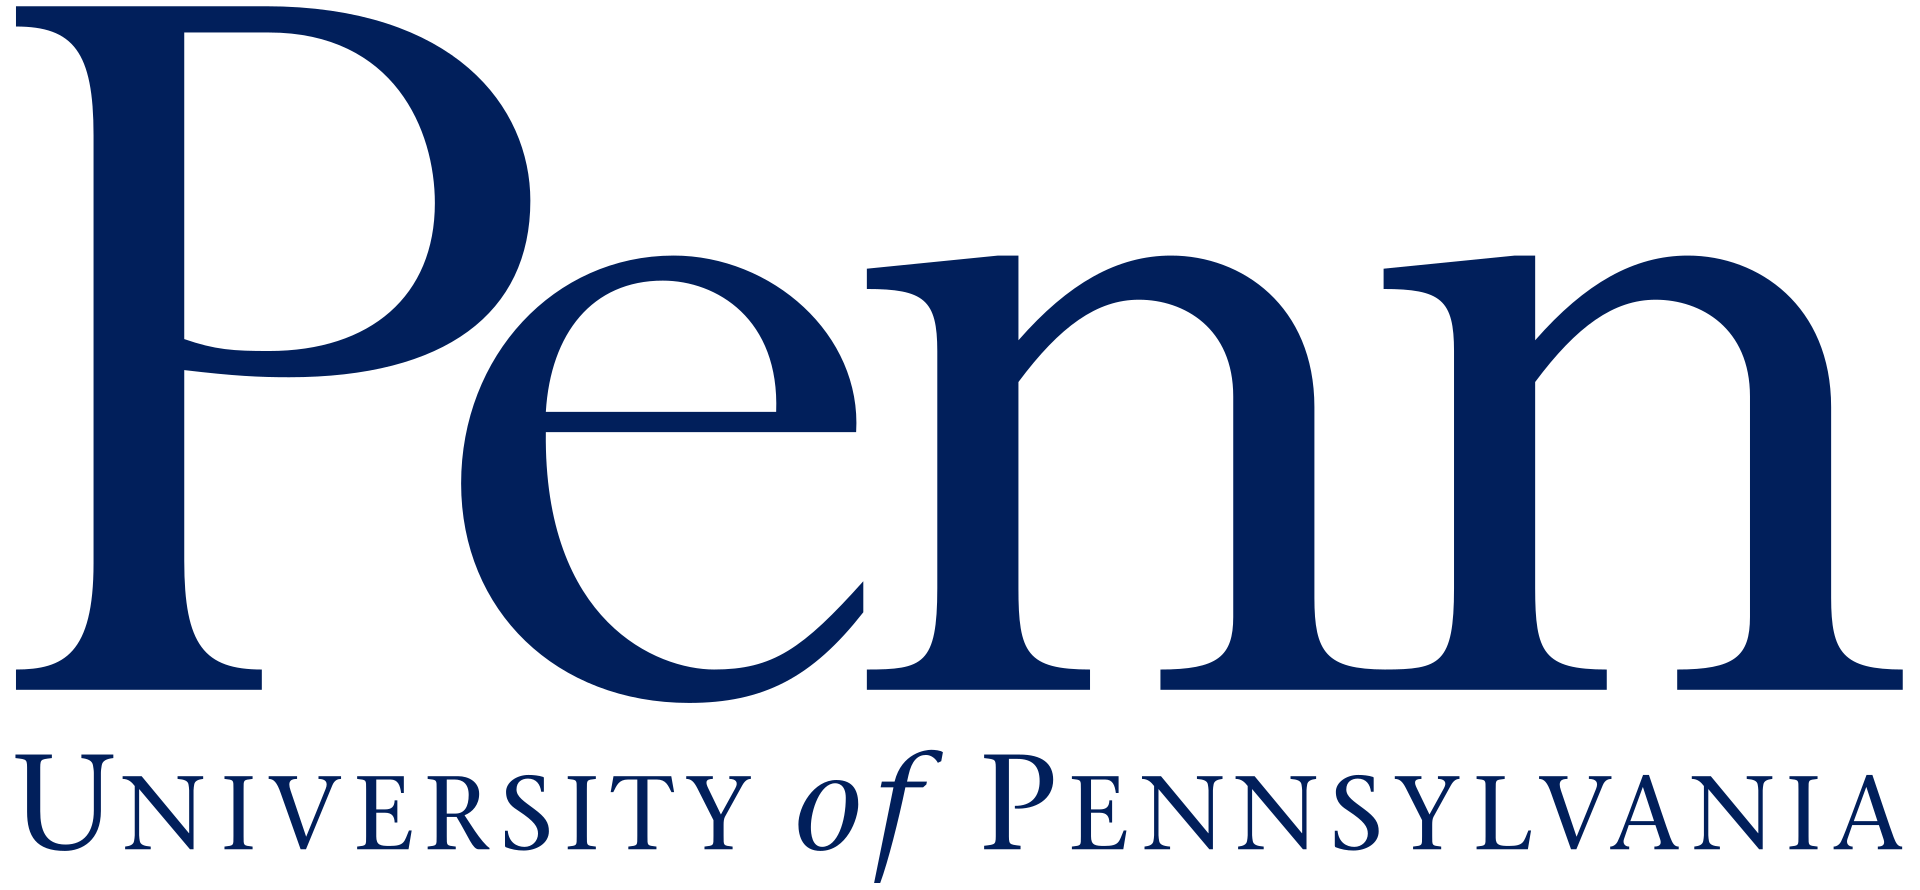 宾夕法尼亚大学 logo, By 宾夕法尼亚大学 - http://www.宾夕法尼亚大学.edu/about/styleguide-logo-branding，公共领域，http://commons.维基.org/w/index.php?curid = 66569976 "